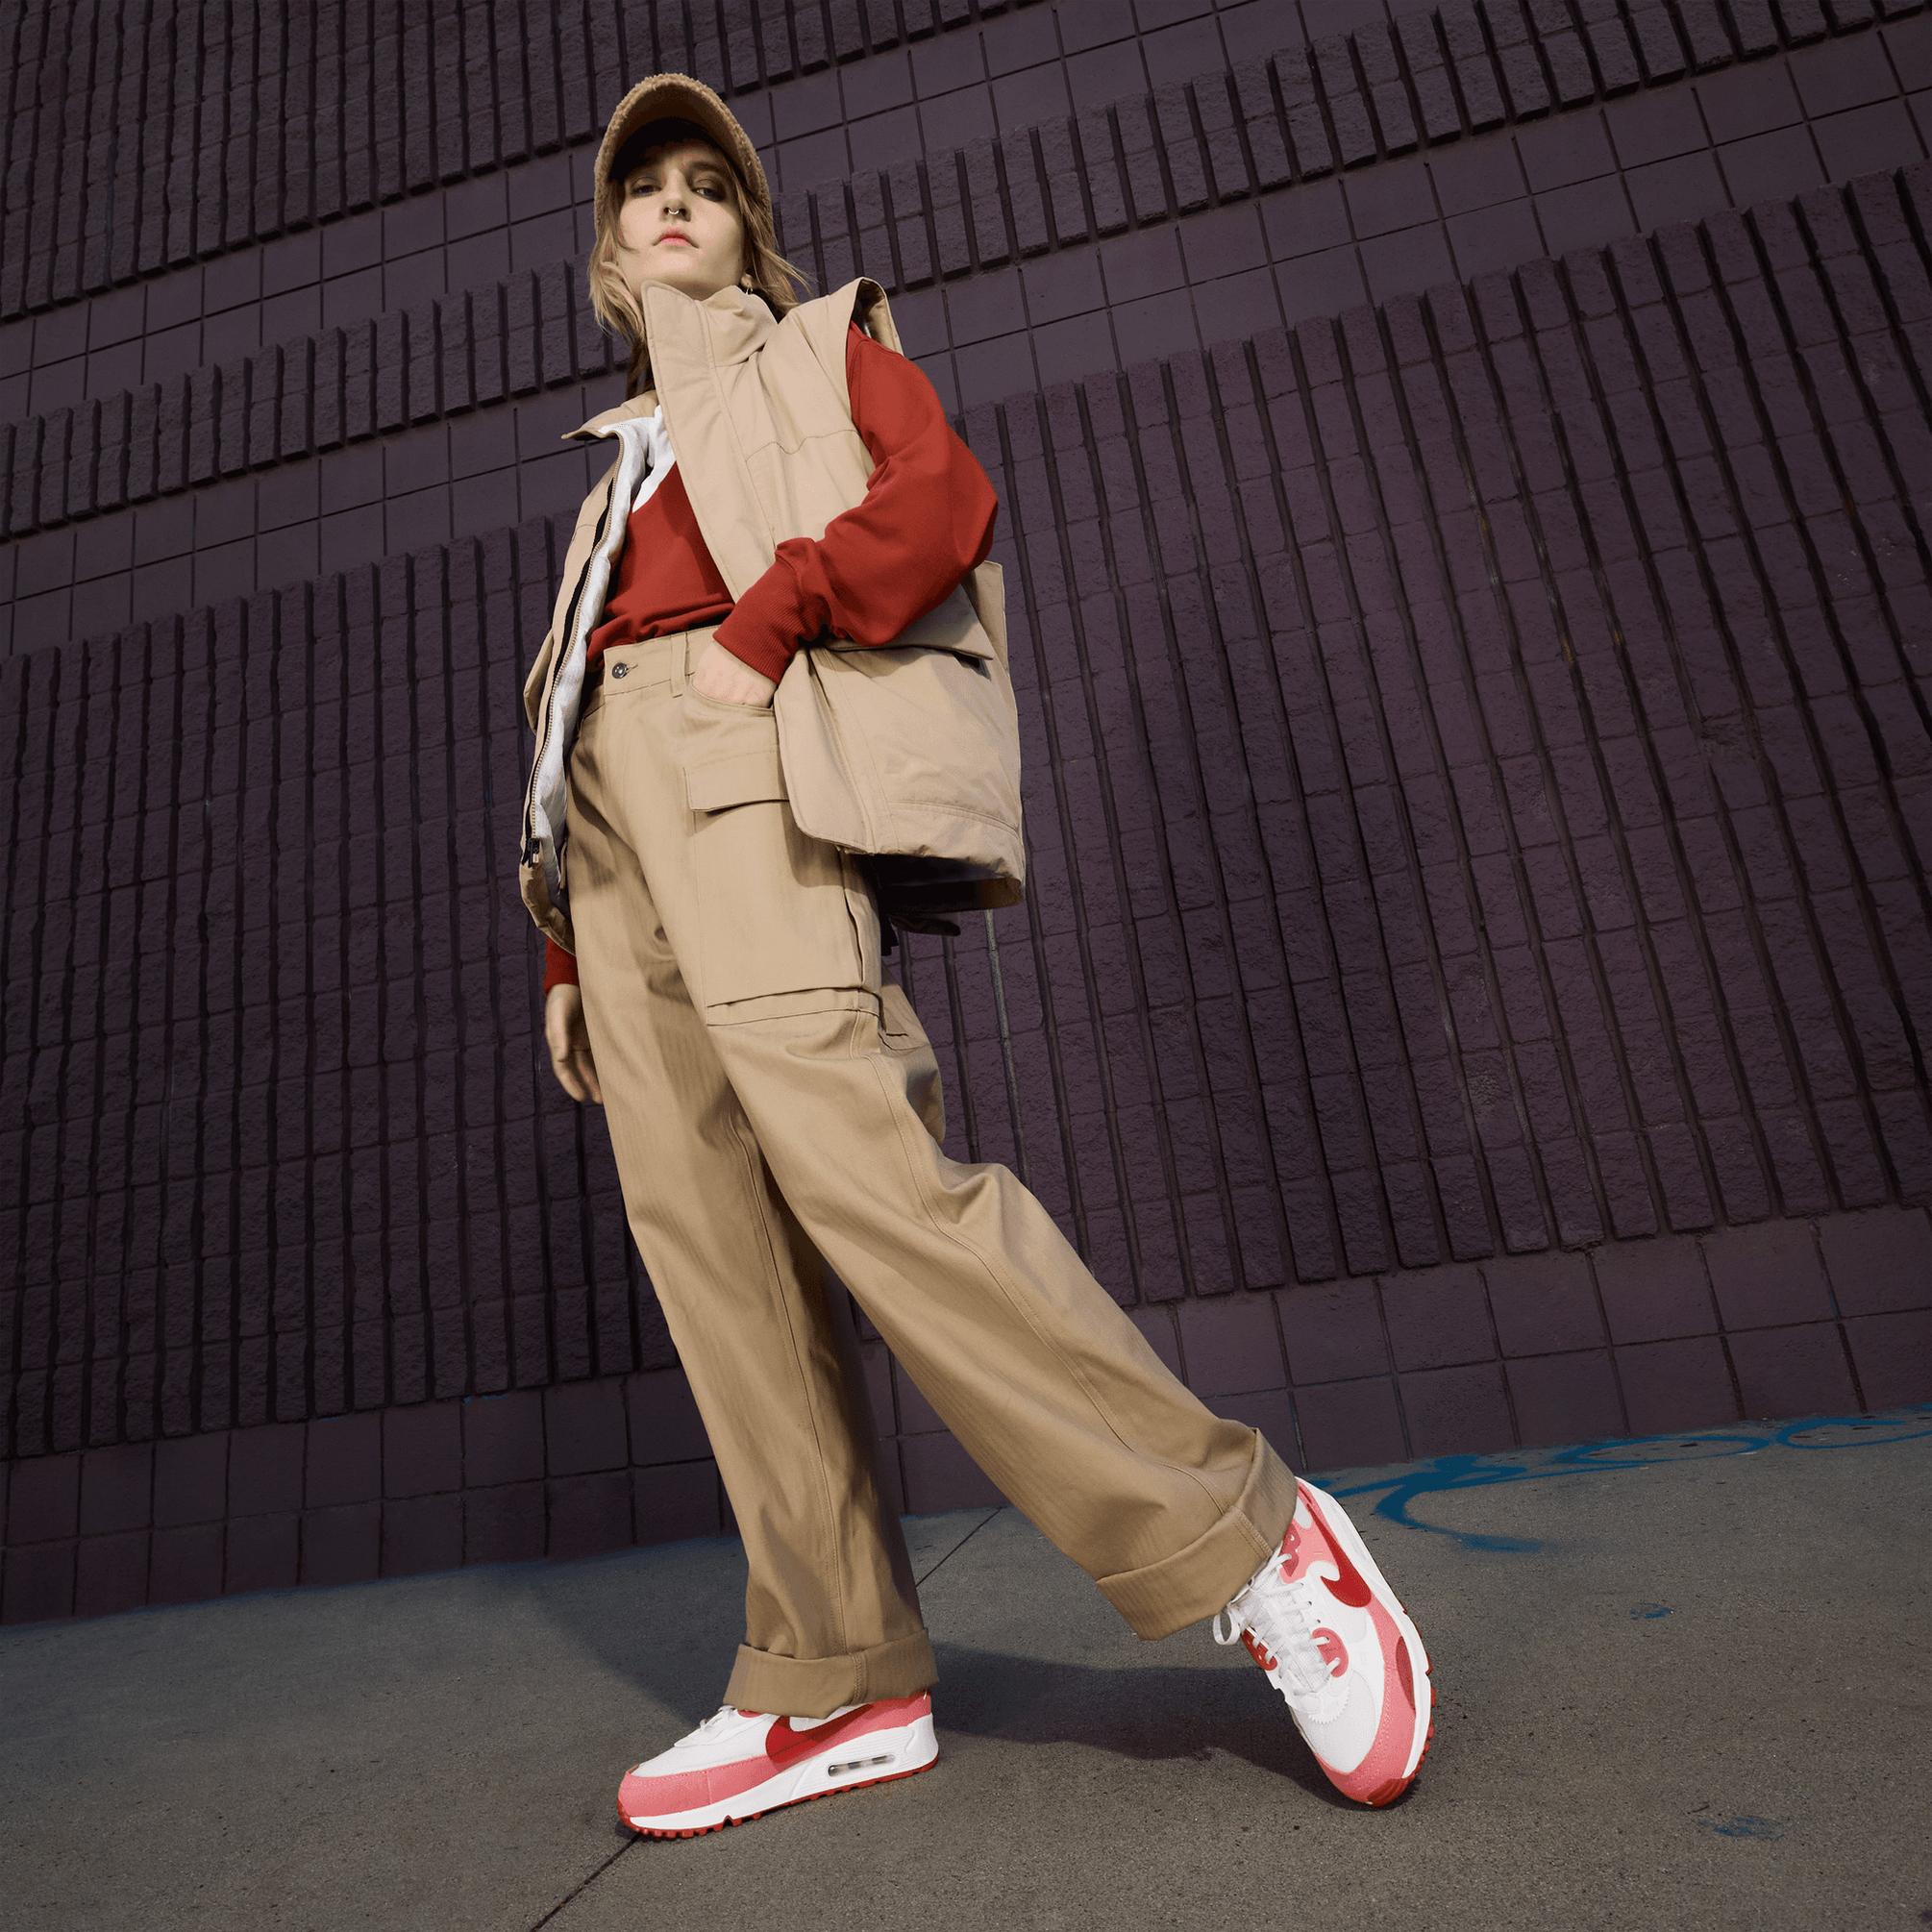  Nike Air Max 90 Futura Kadın Kırmızı Sneaker